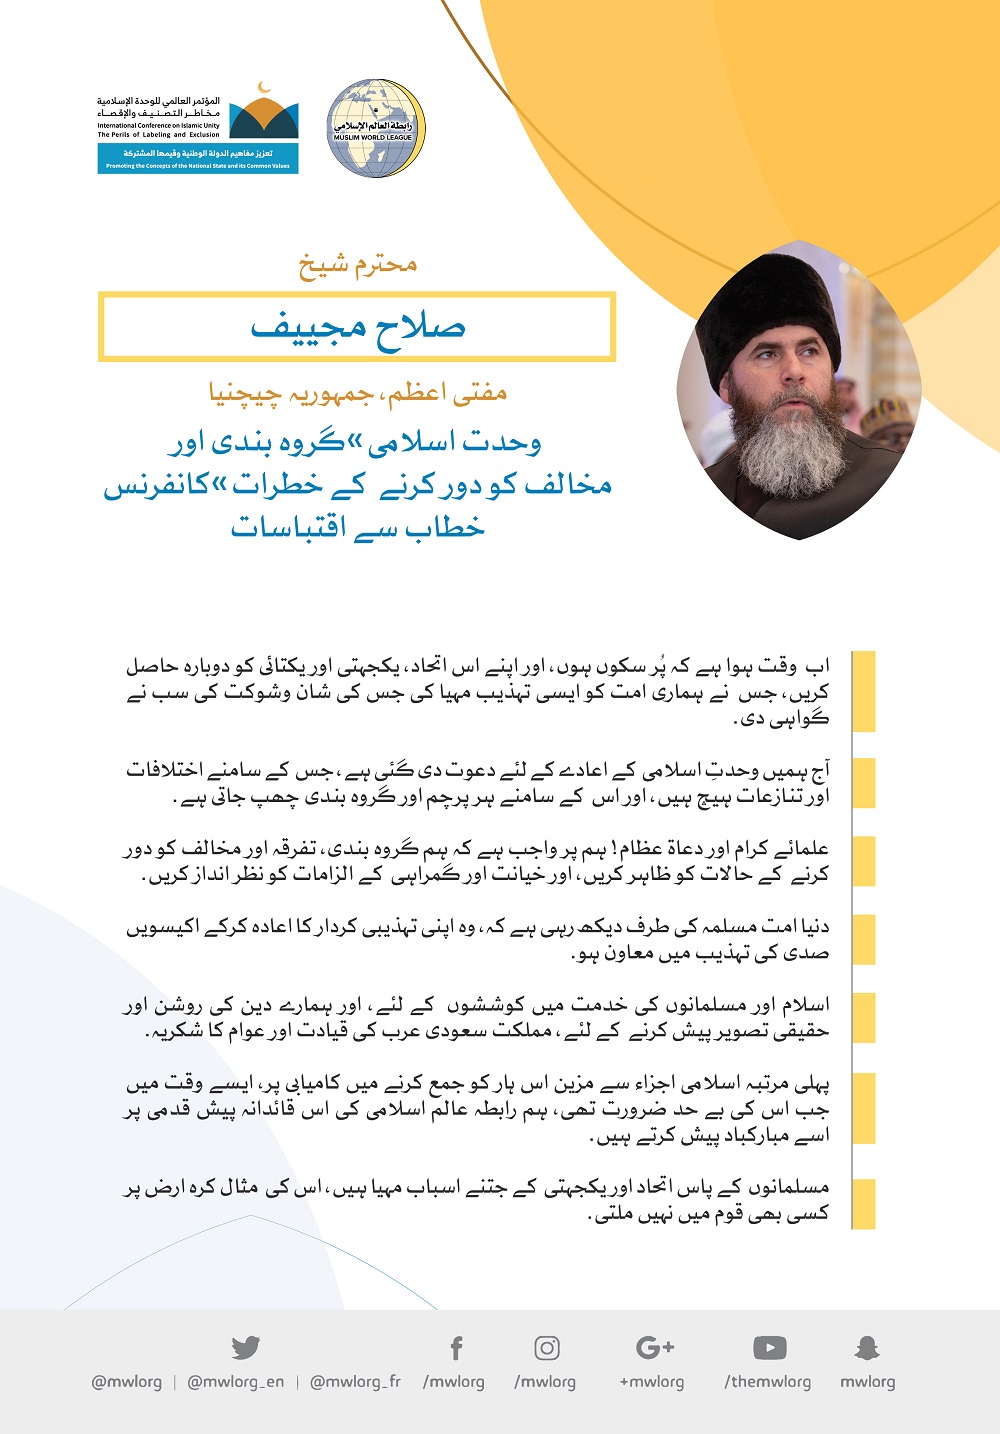 رابطہ عالم اسلامی کی کانفرنس سے مفتی اعظم جمہوریہ چیچینیا، شیخ صلاح مجییف کے خطاب سے اقتباسات